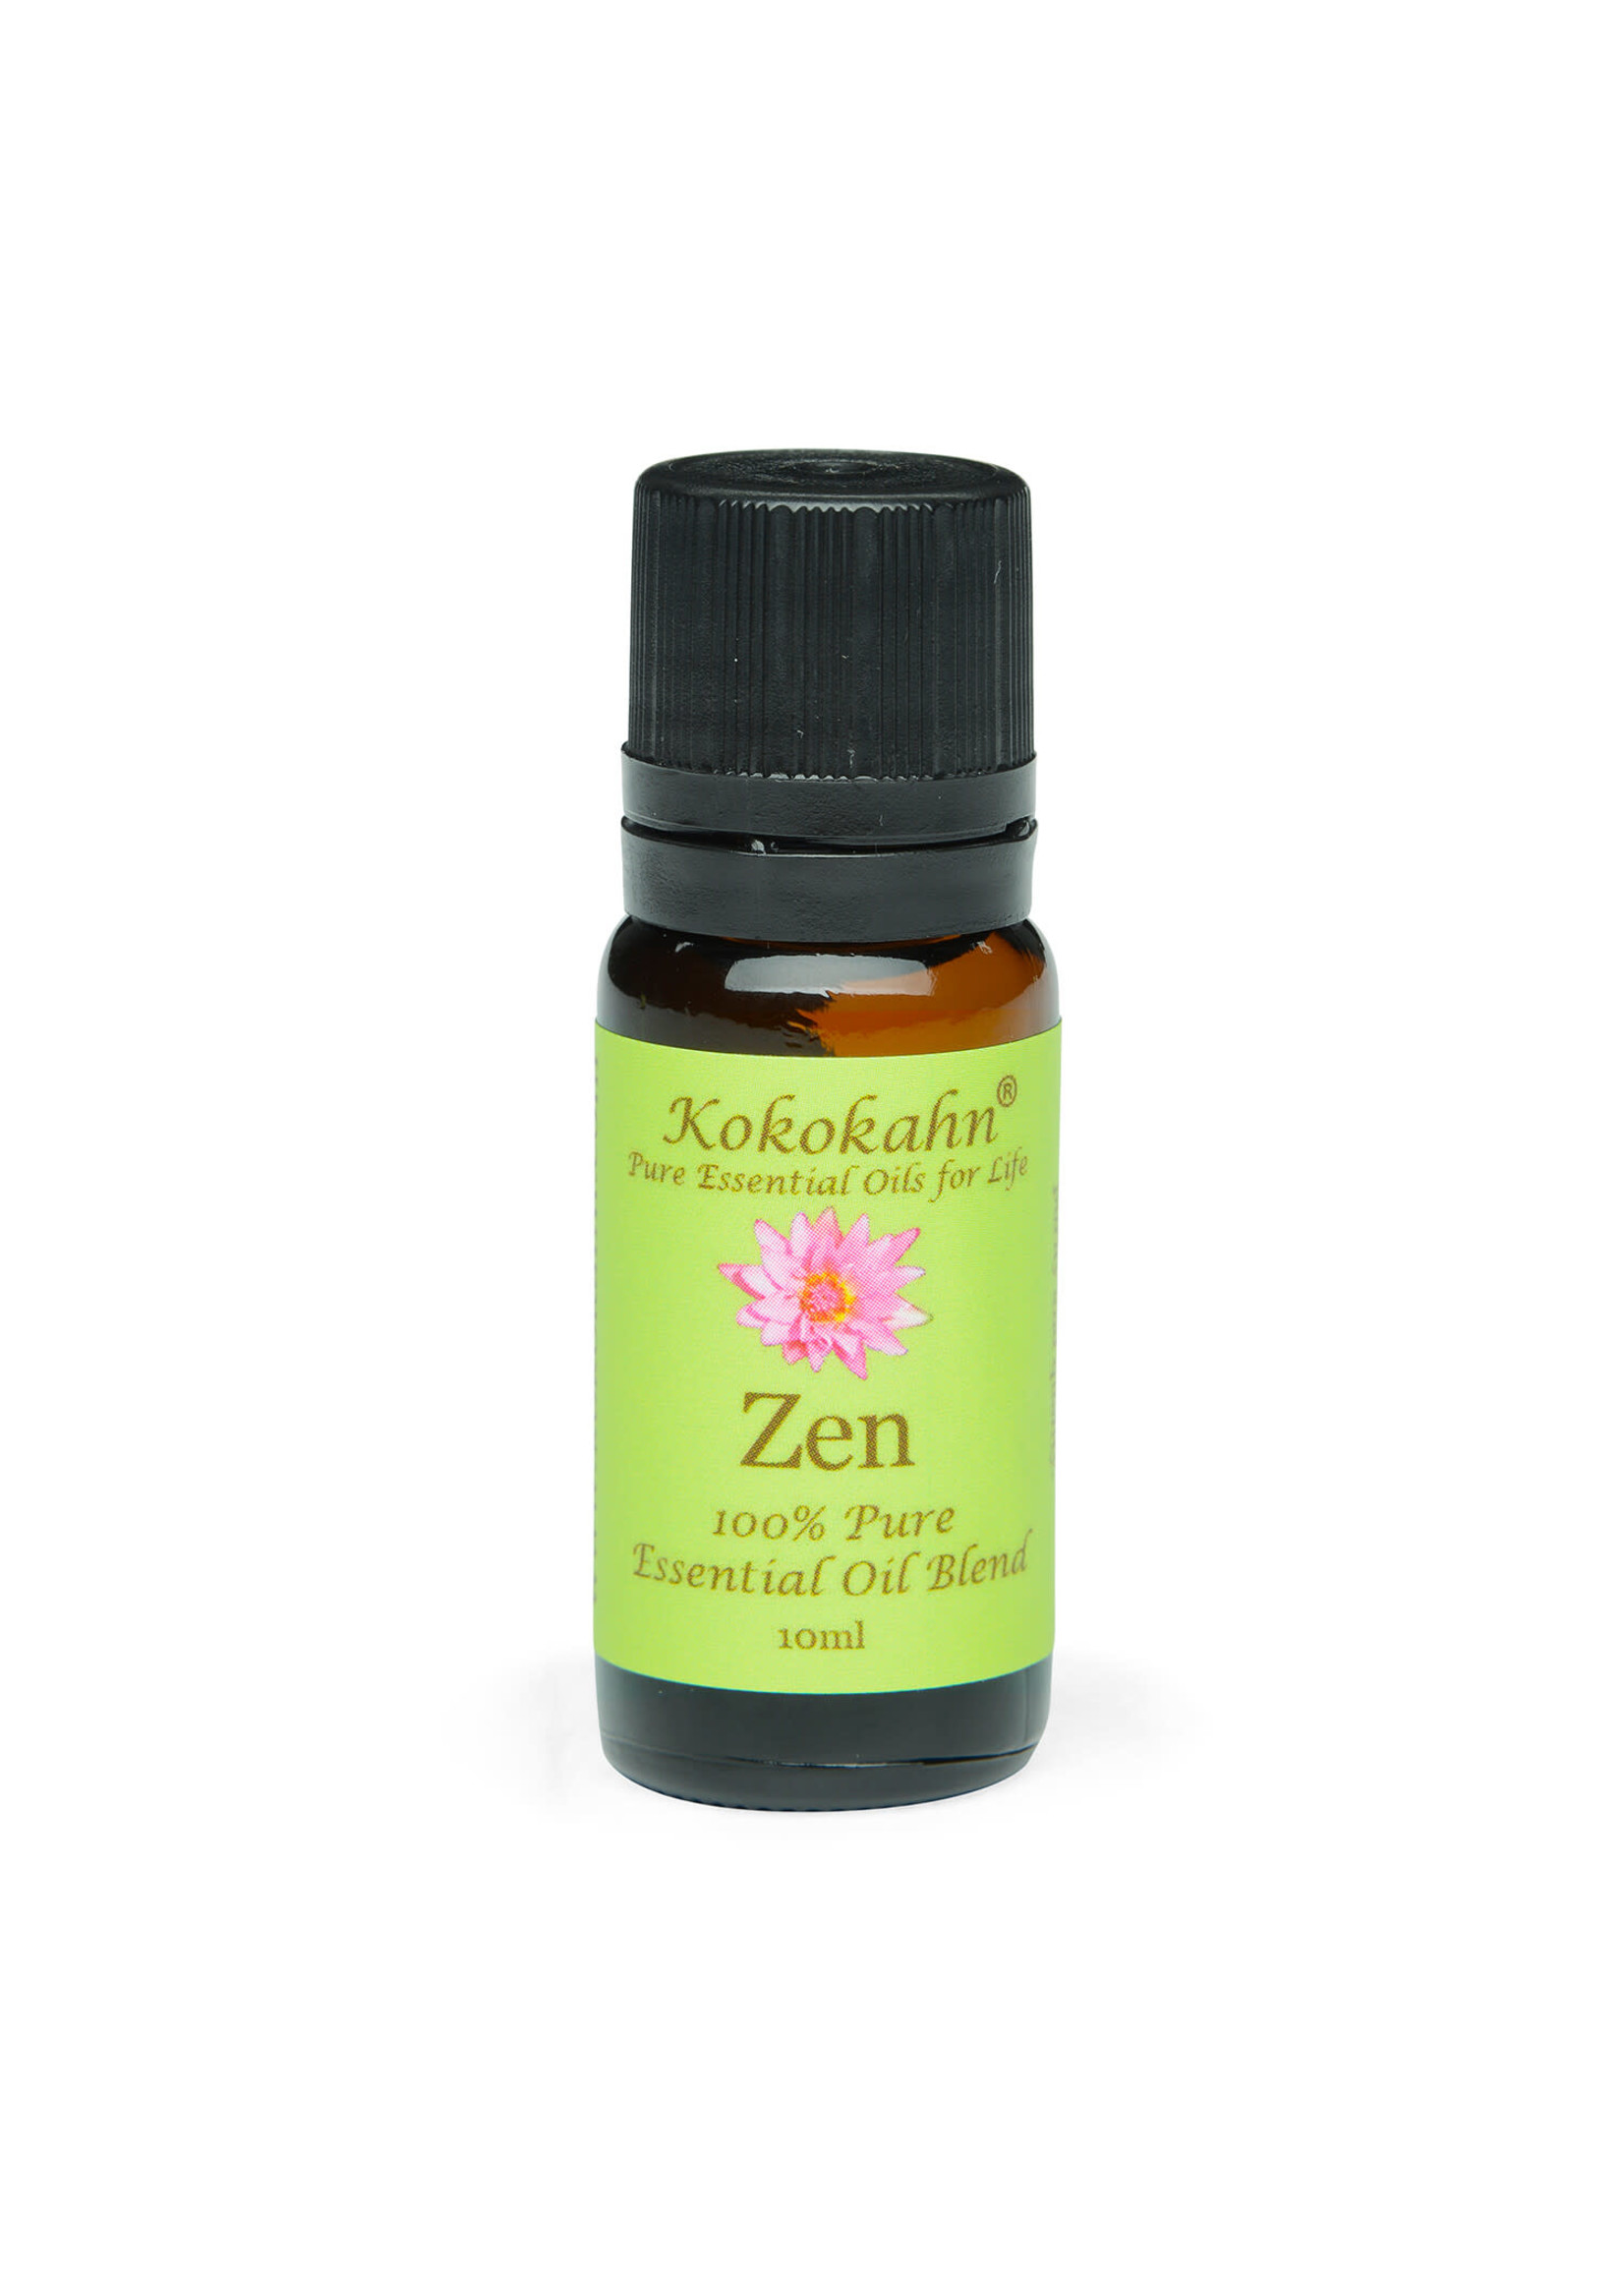 Kokokahn Zen Essential Oil Blend